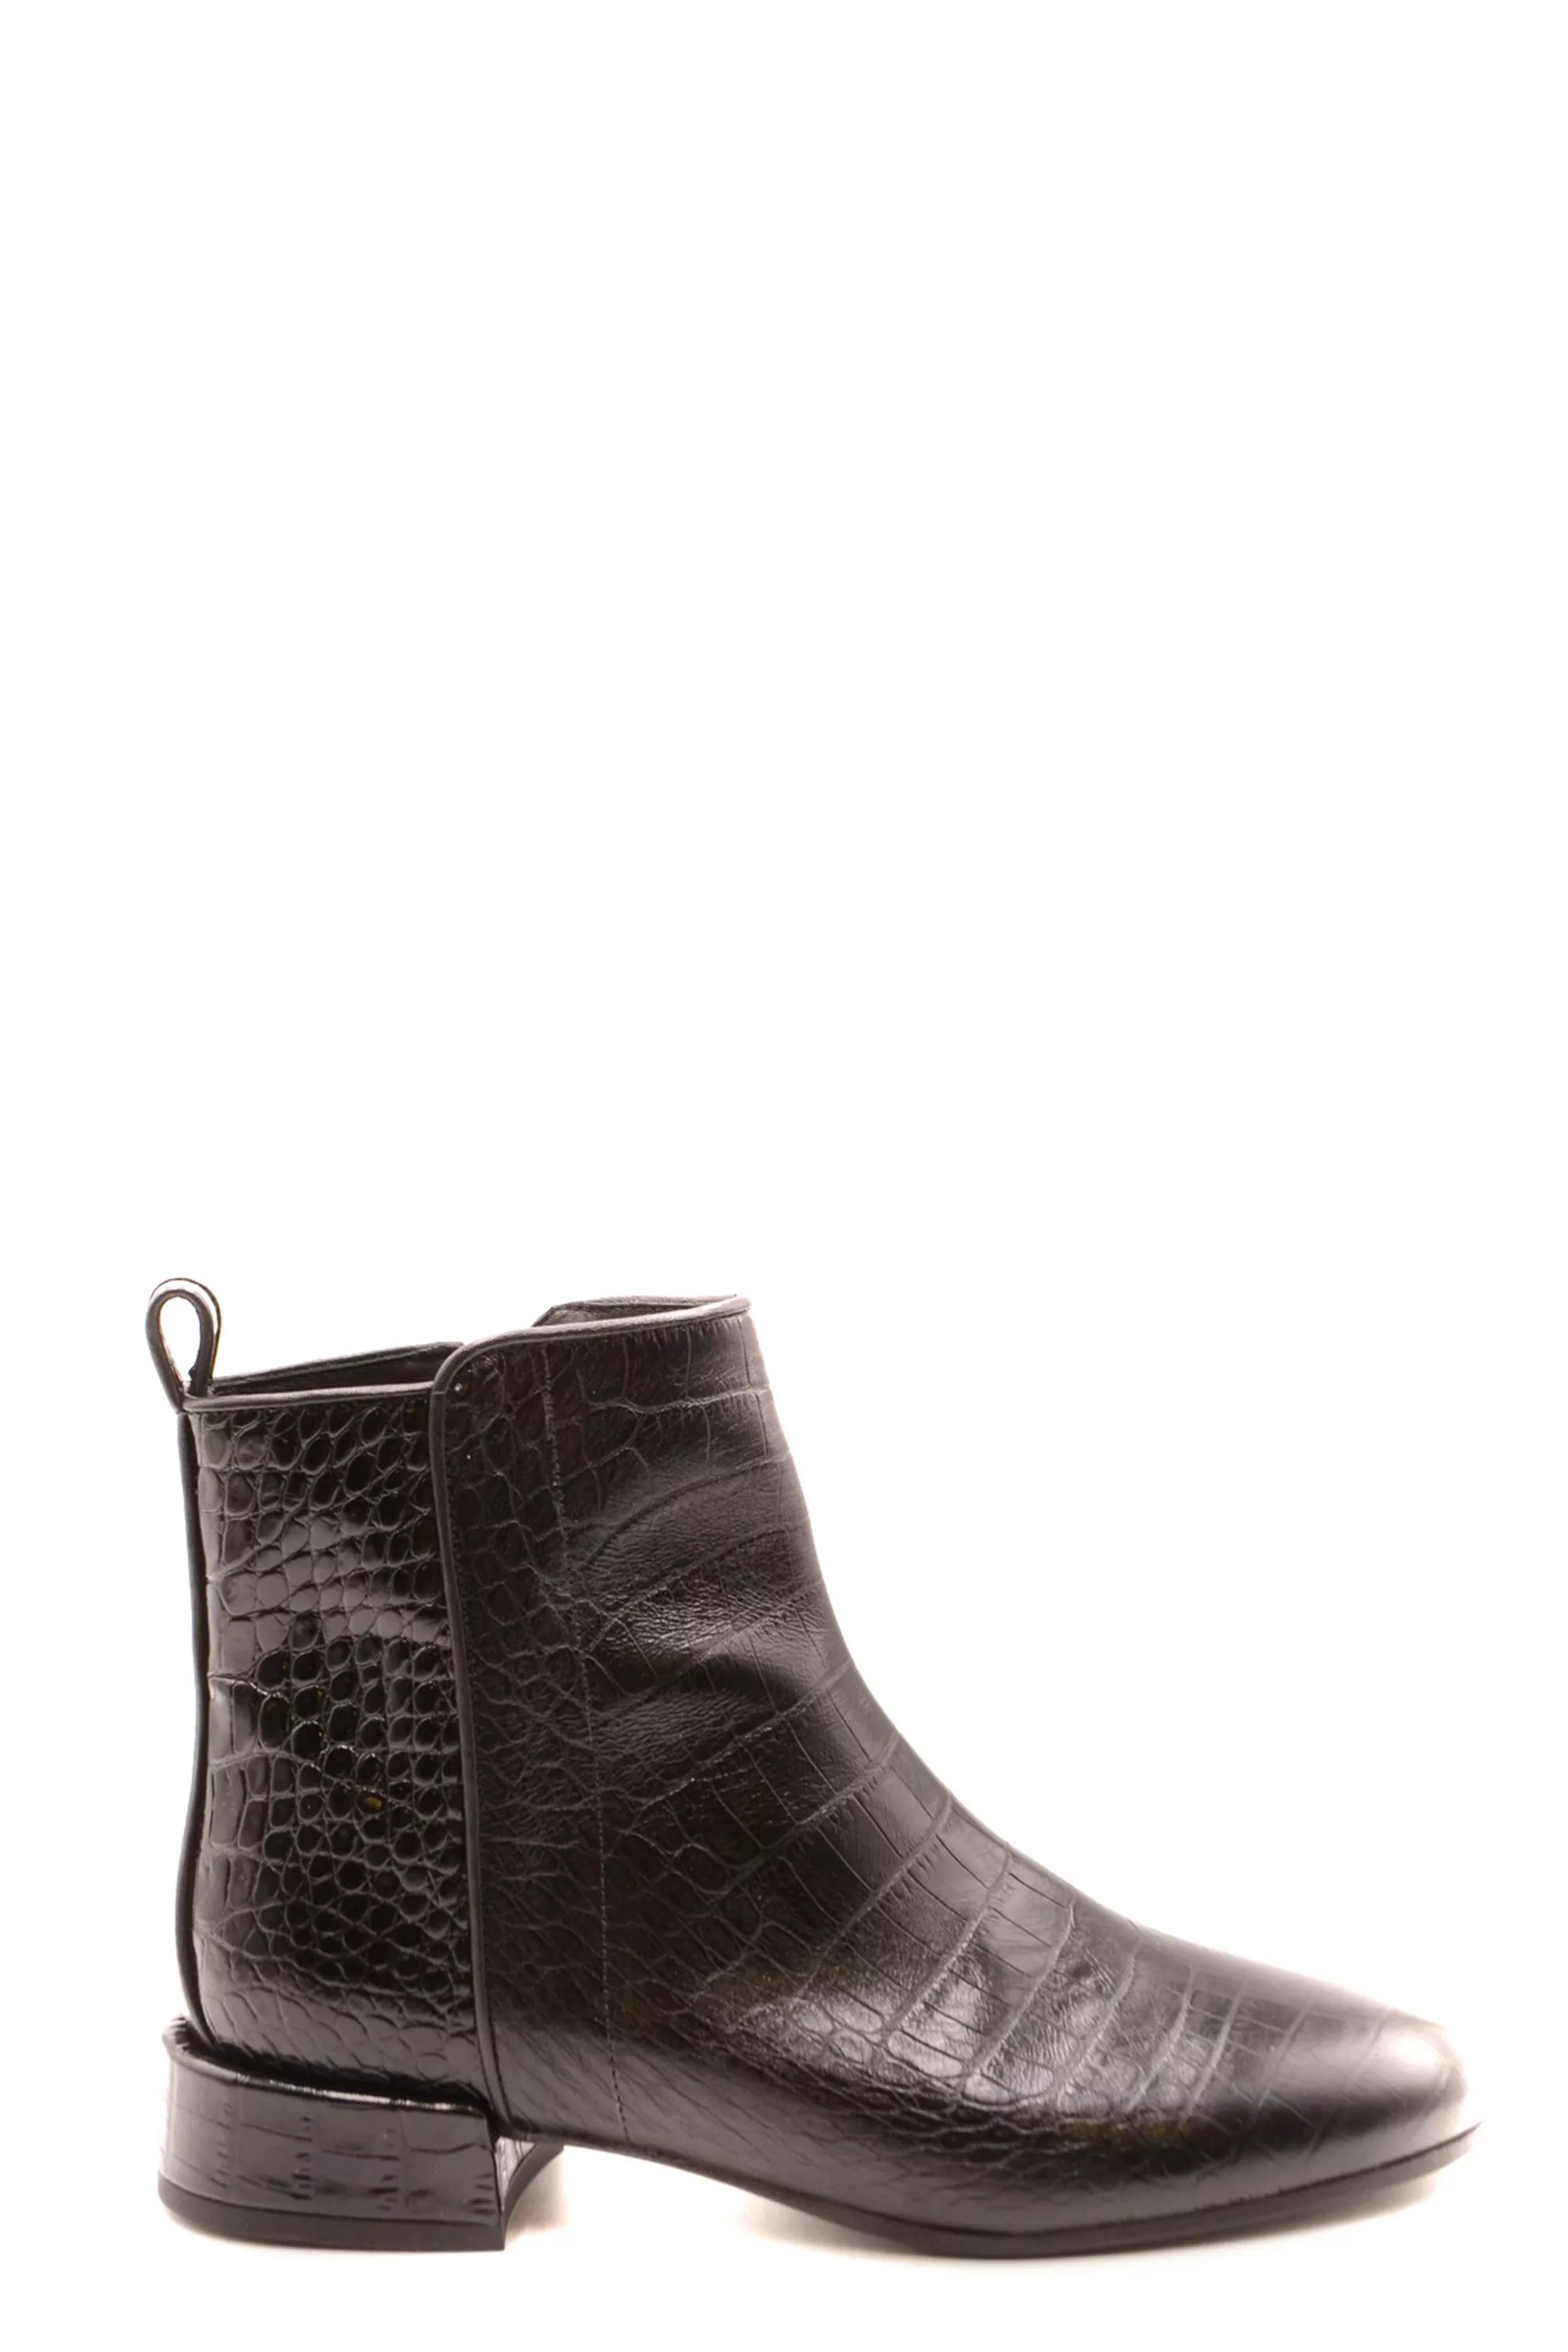 pons quintana Stiefel Damen leather : 100% günstig online kaufen